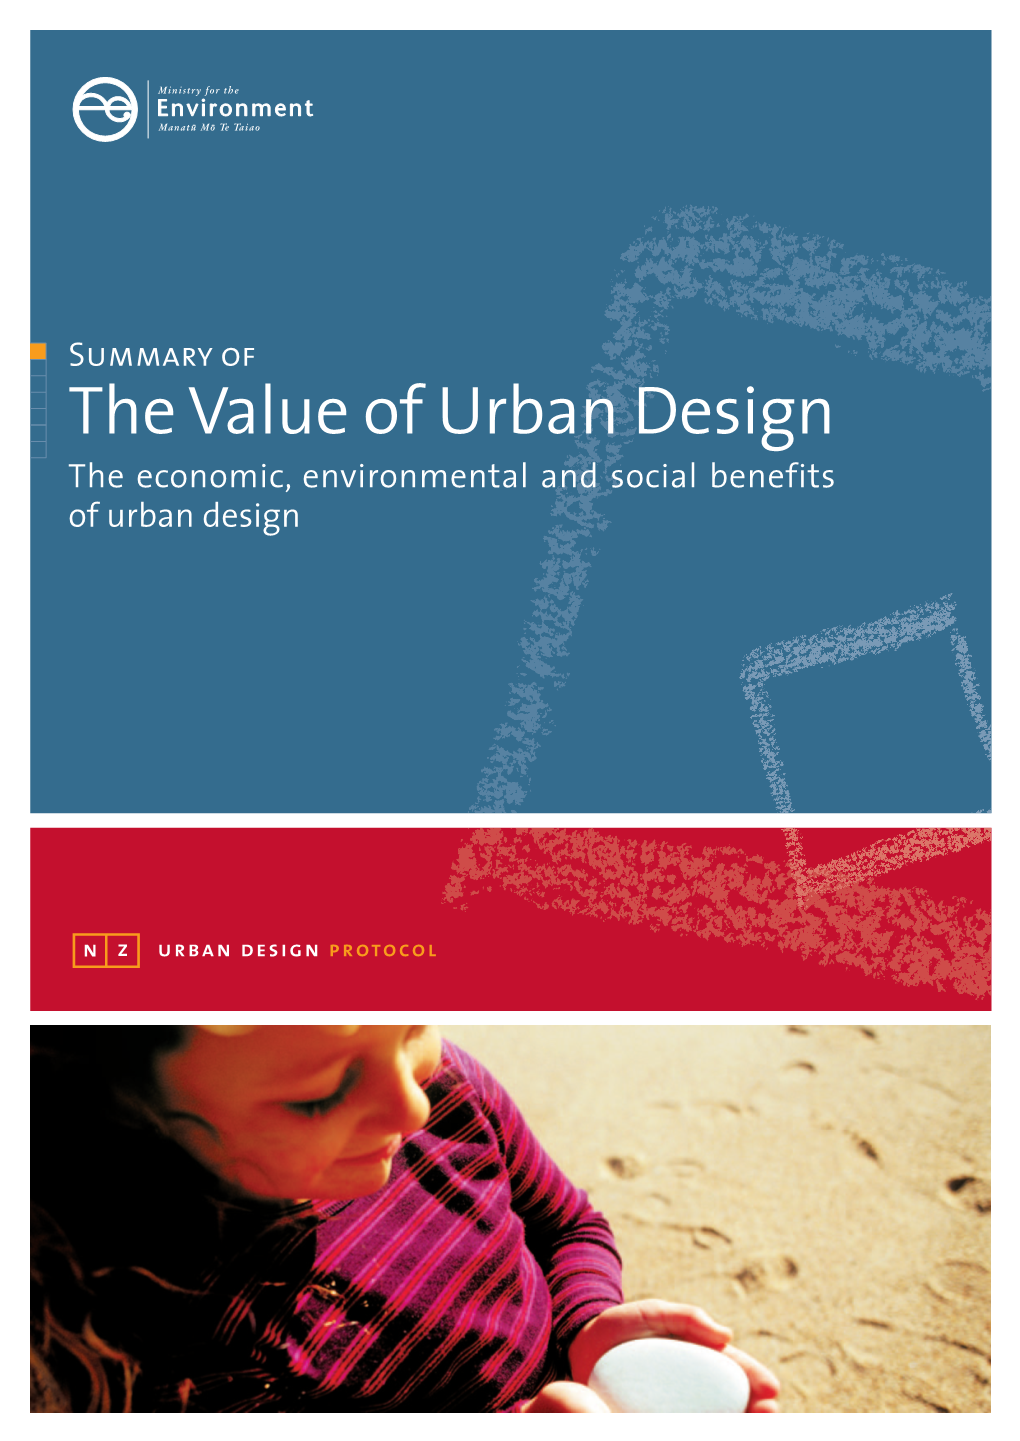 The Value of Urban Design